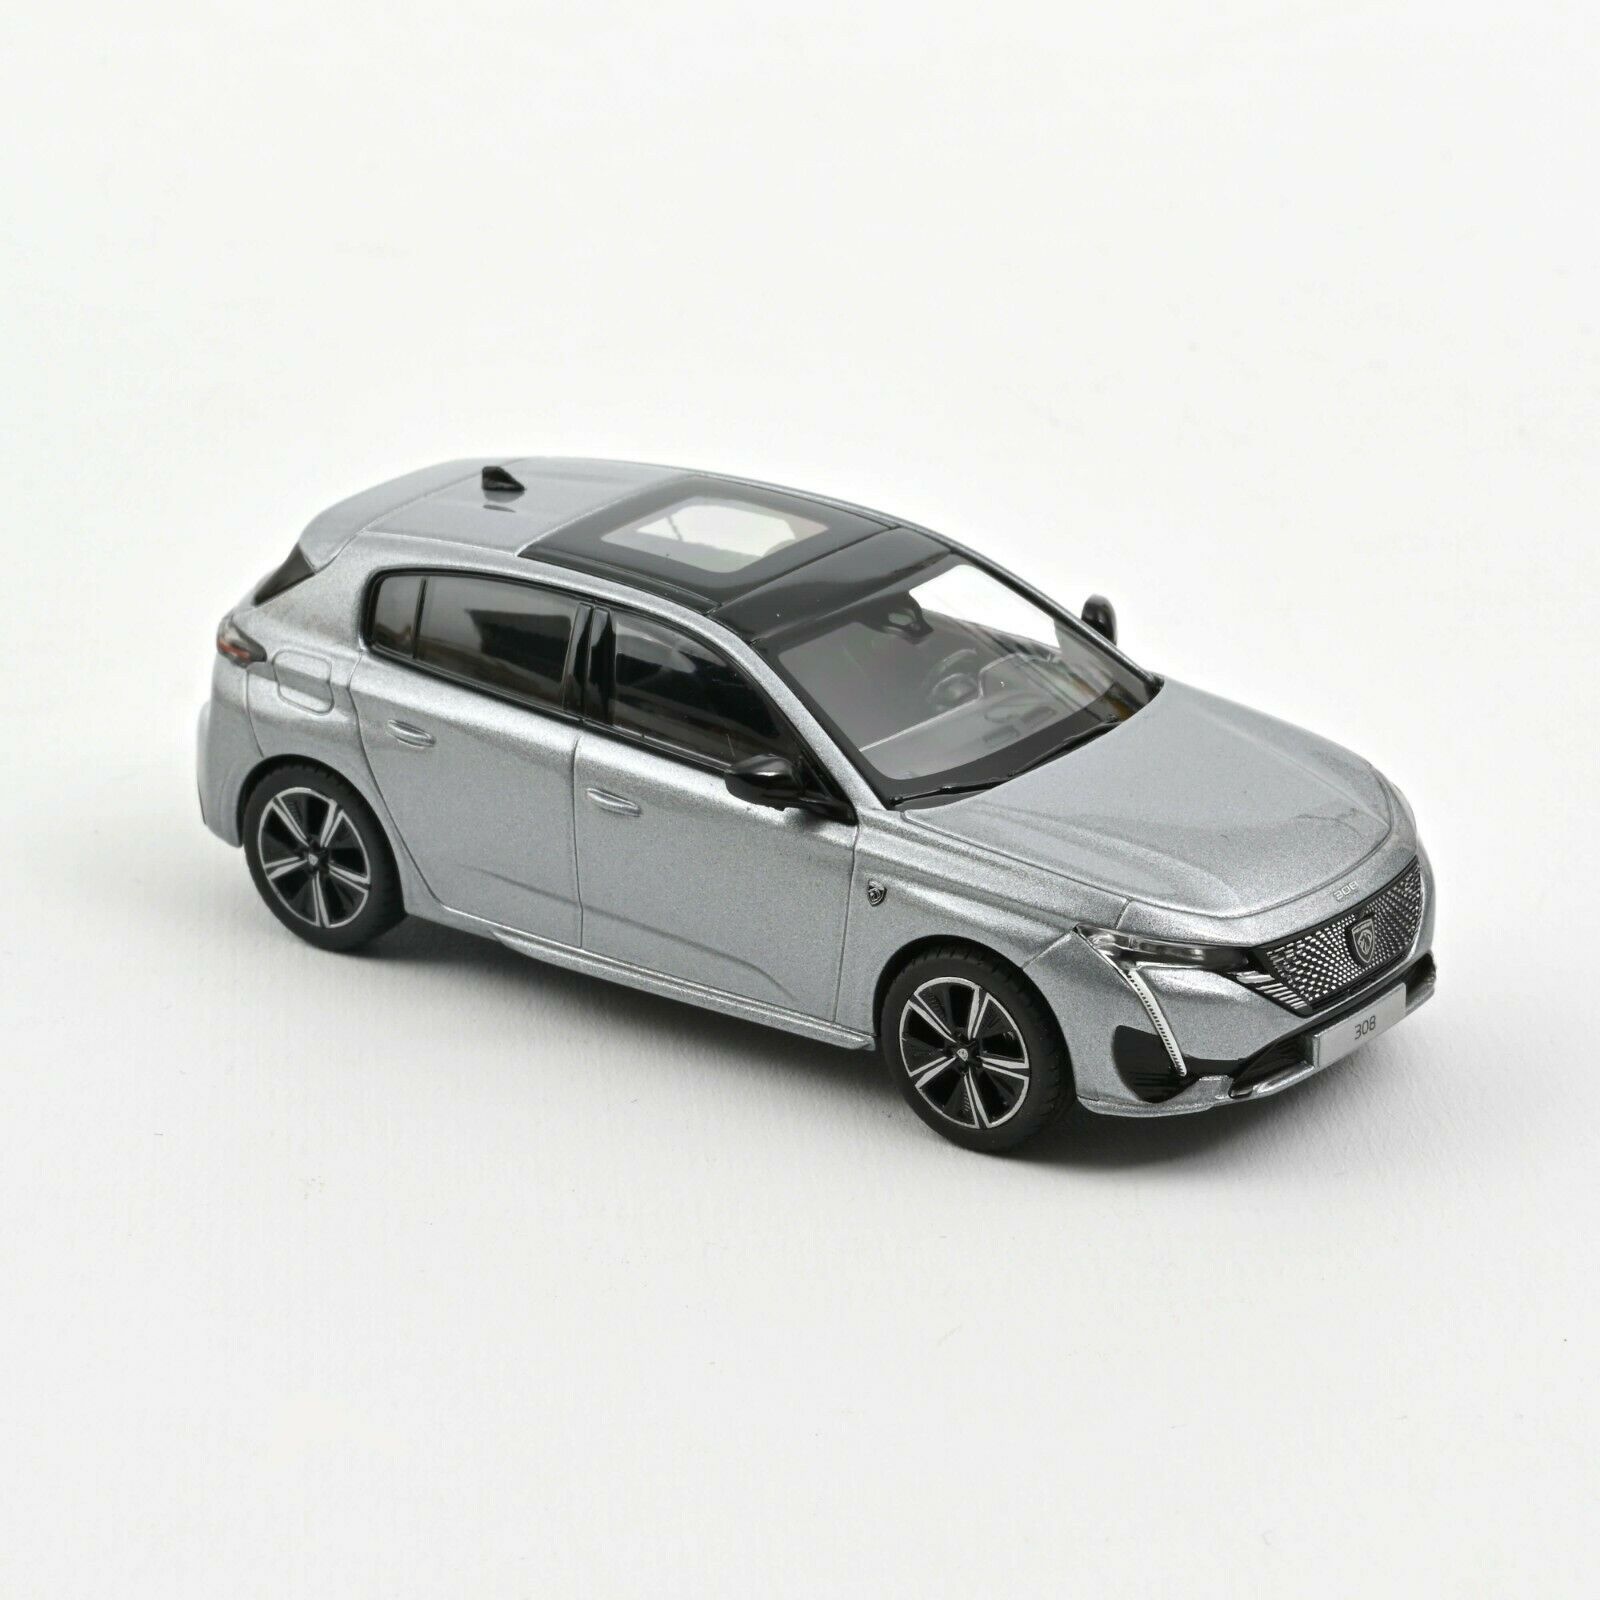 1/43 : La nouvelle Peugeot 308 bientôt disponible en miniature ! - PDLV